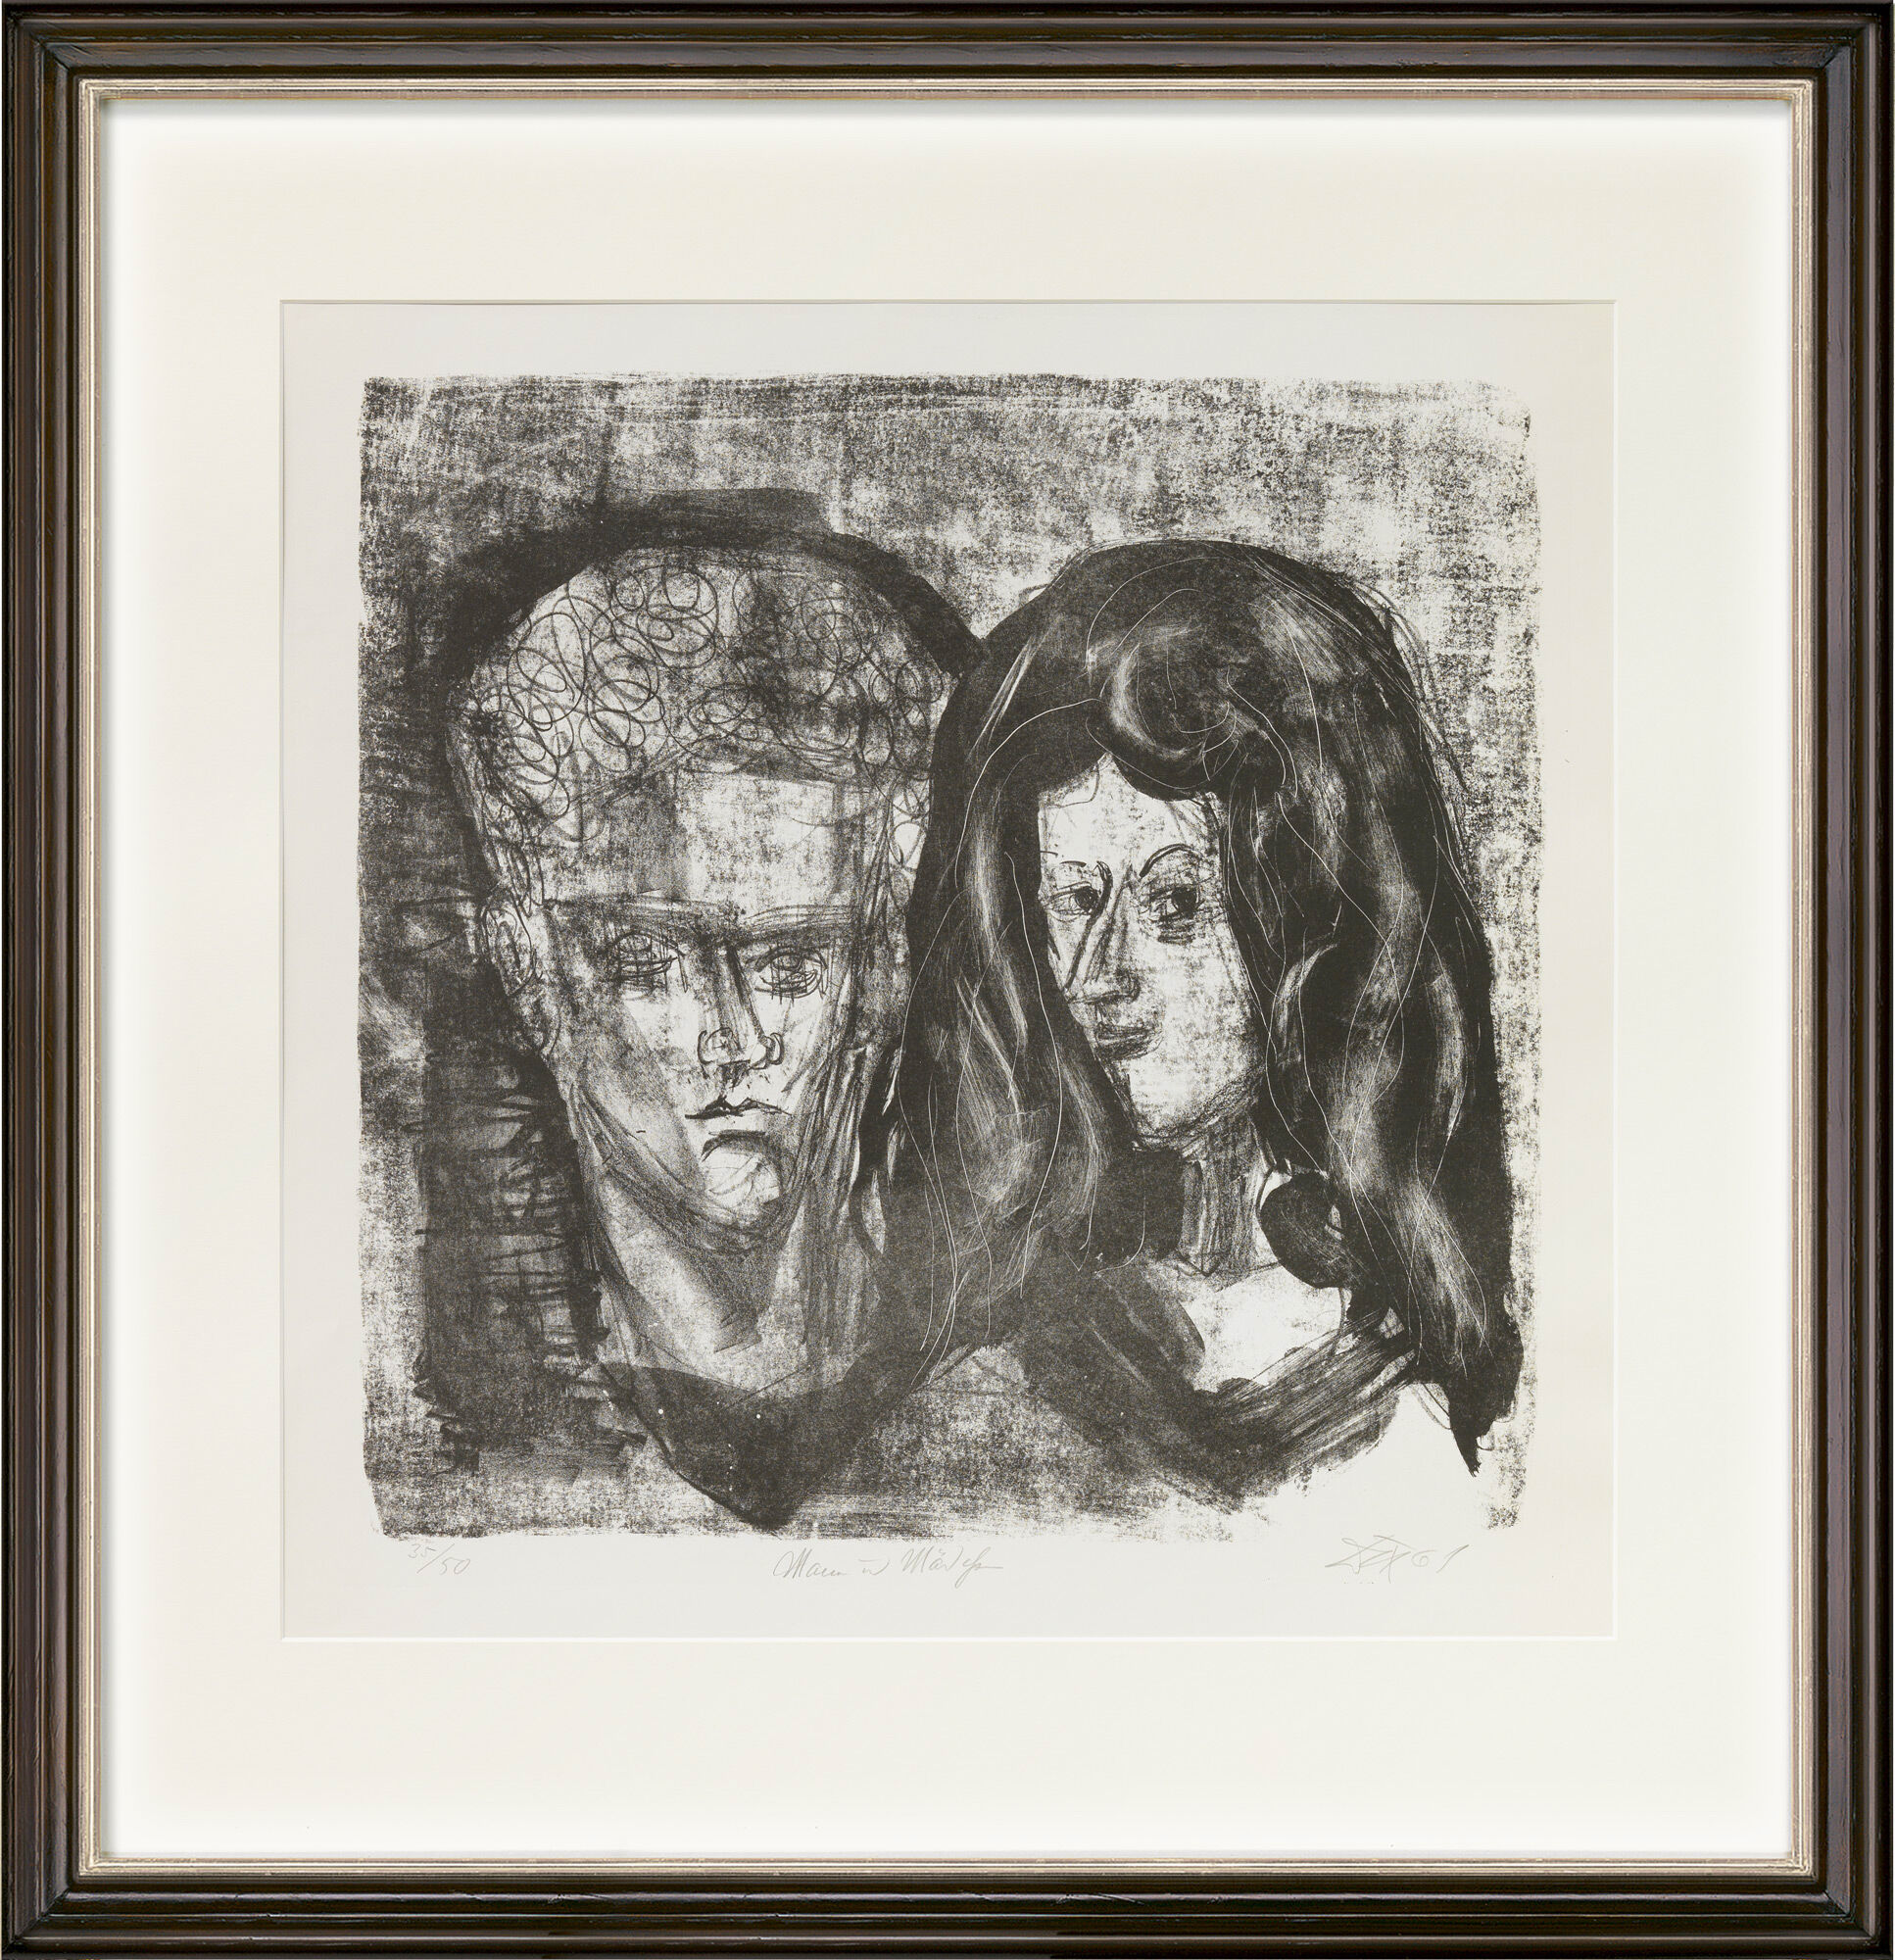 Billedet "Mand og pige" (1961) von Otto Dix